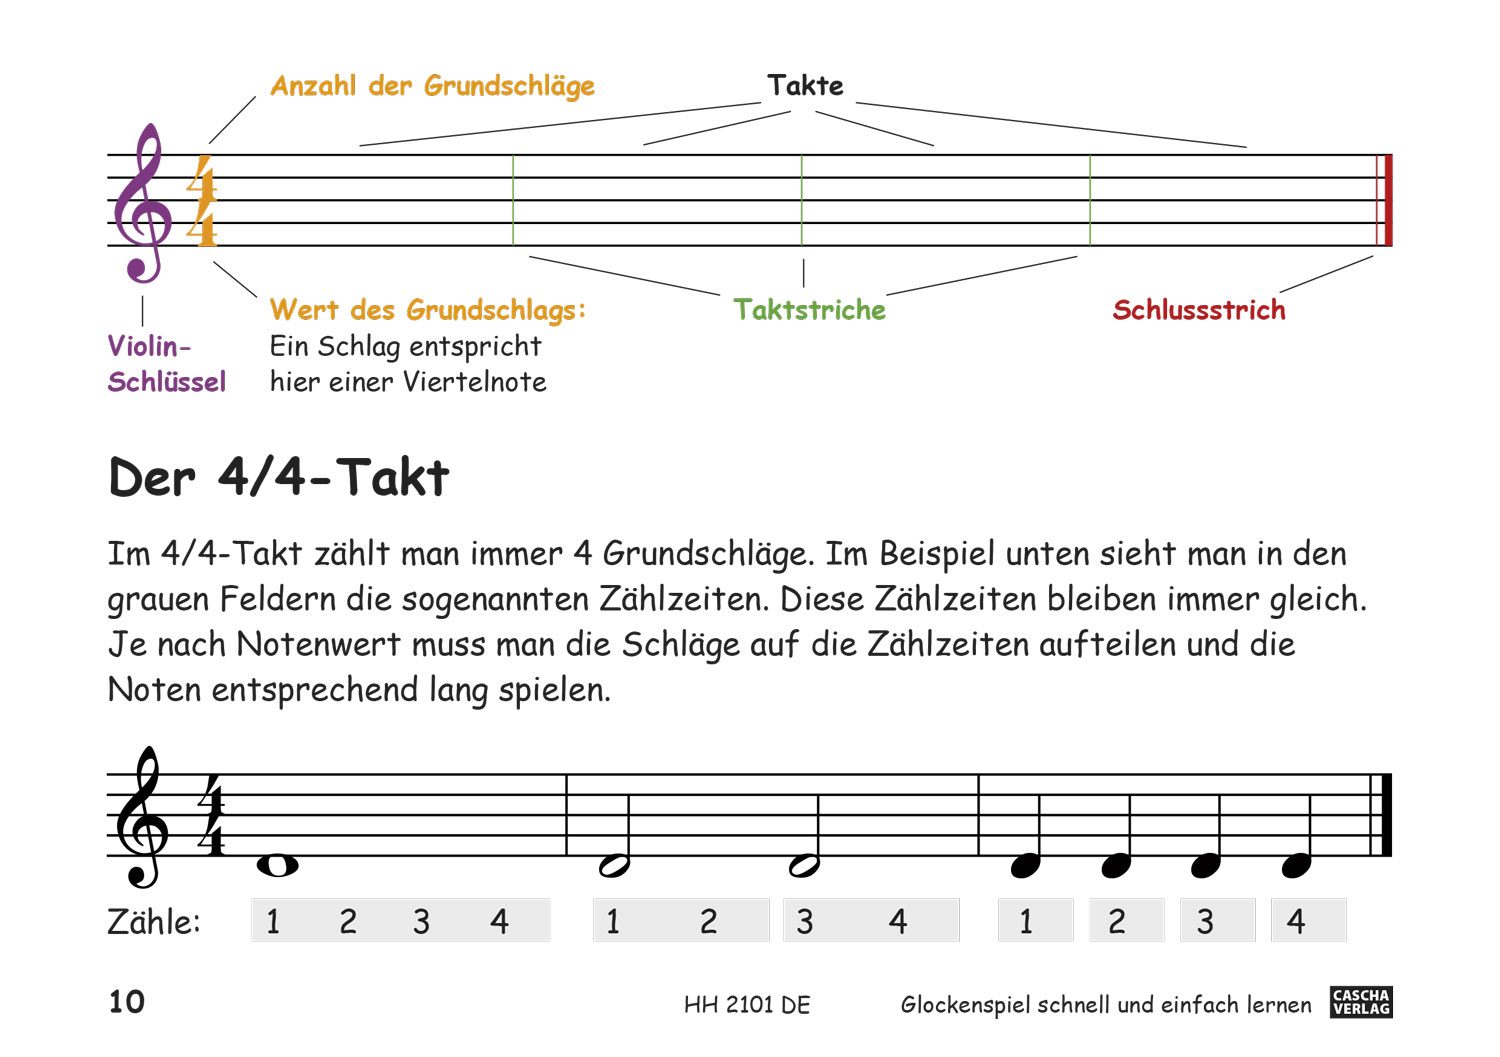 Glockenspiel - Schnell und einfach lernen Seiten 7